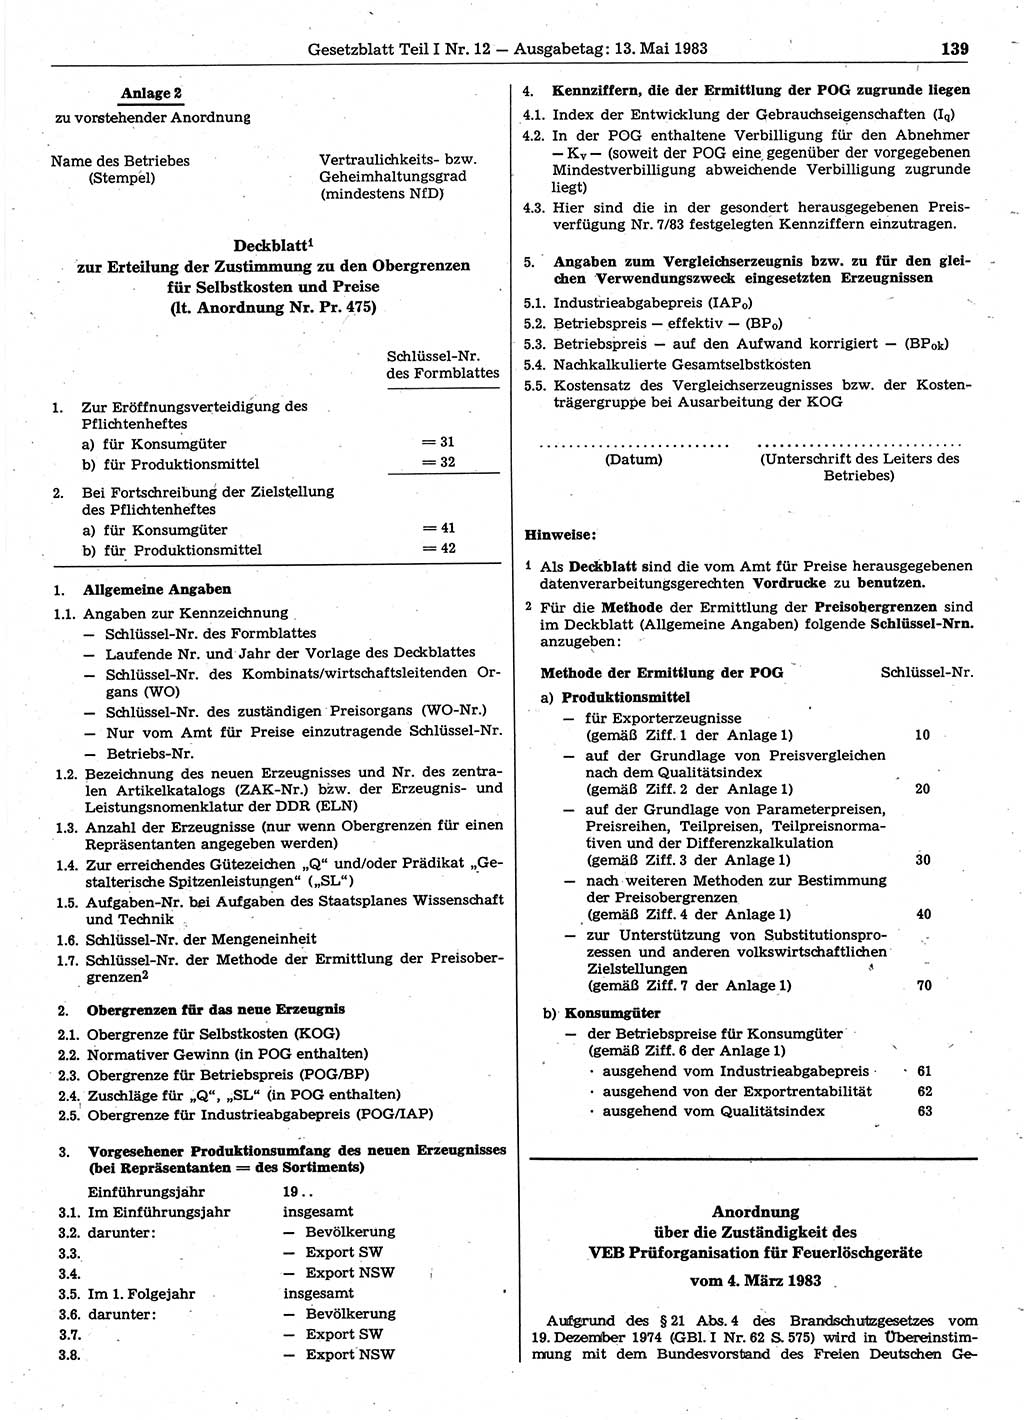 Gesetzblatt (GBl.) der Deutschen Demokratischen Republik (DDR) Teil Ⅰ 1983, Seite 139 (GBl. DDR Ⅰ 1983, S. 139)